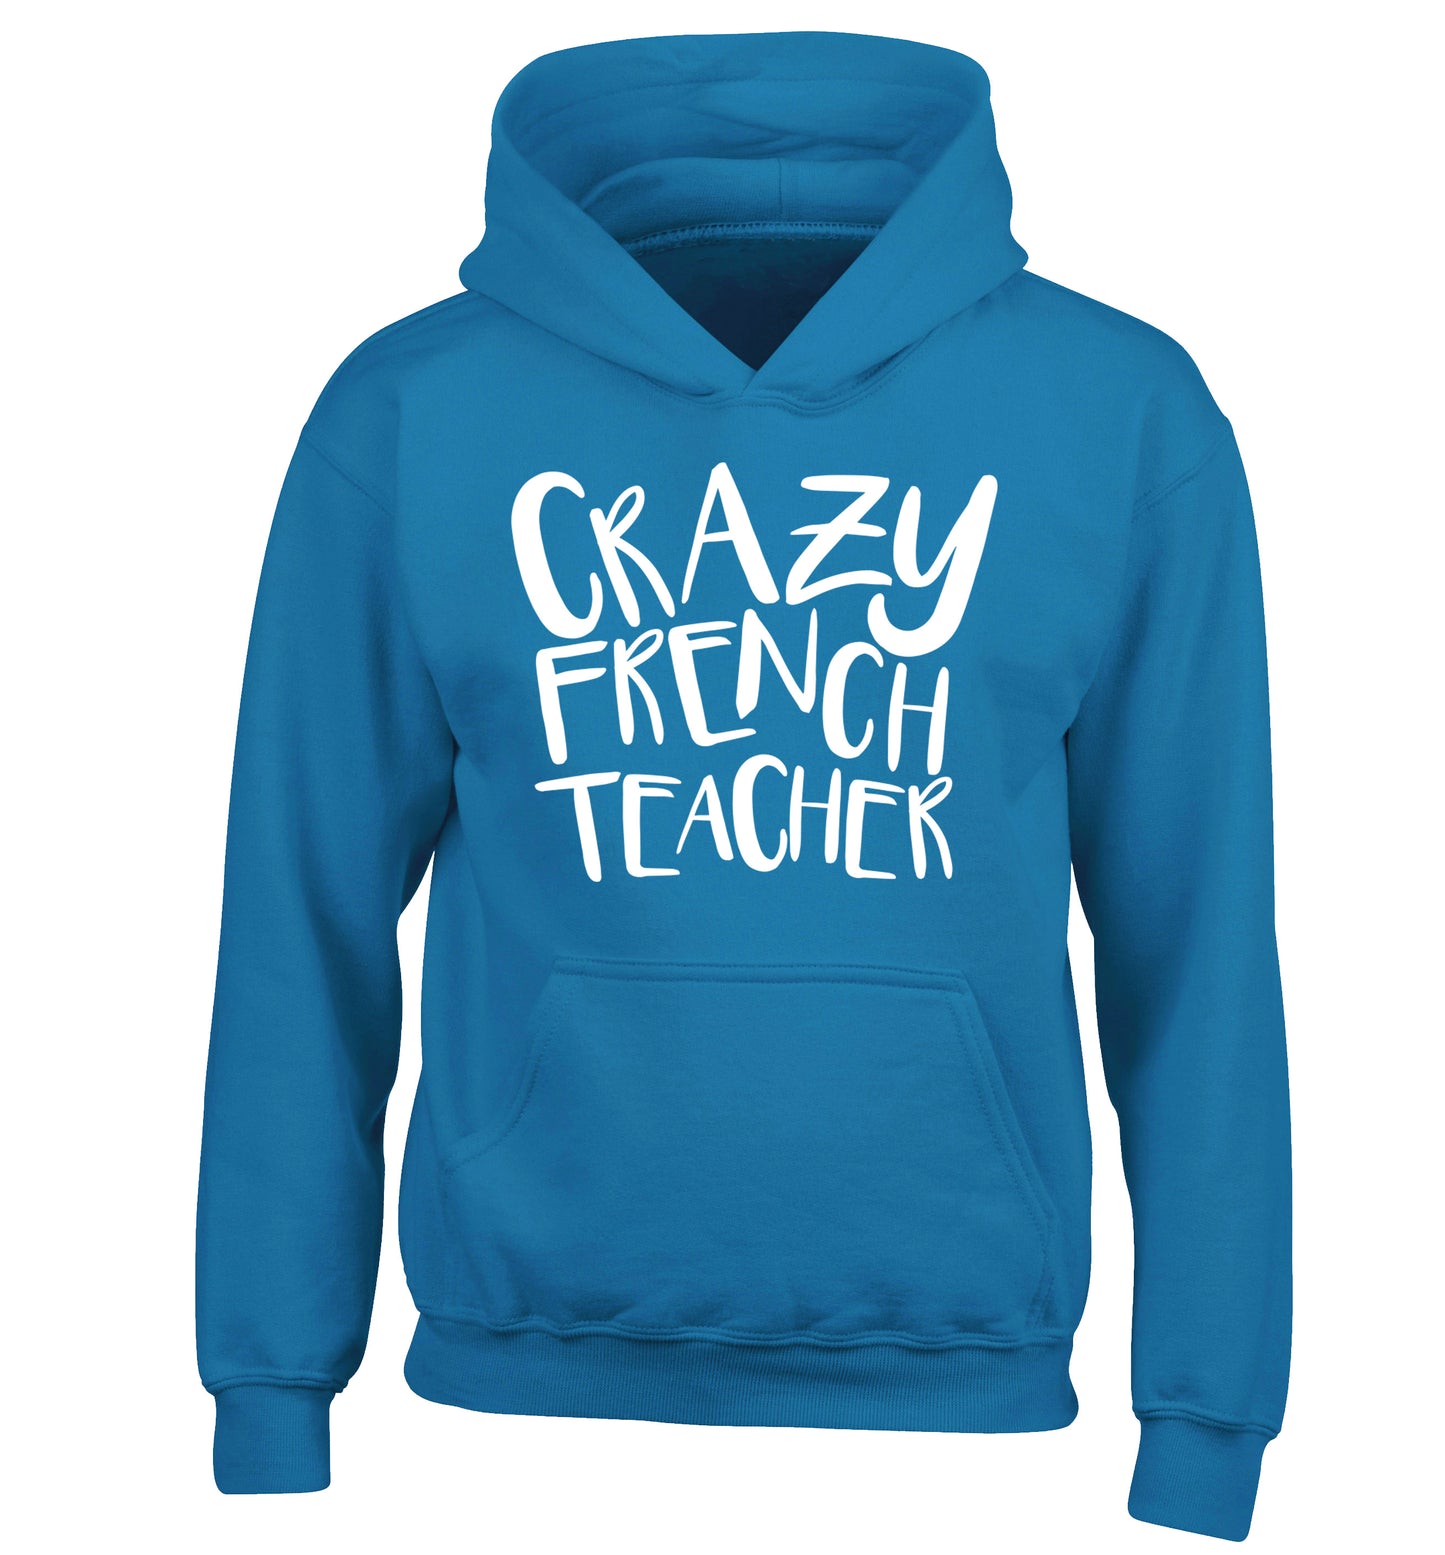 Crazy french teacher children's blue hoodie 12-13 Years